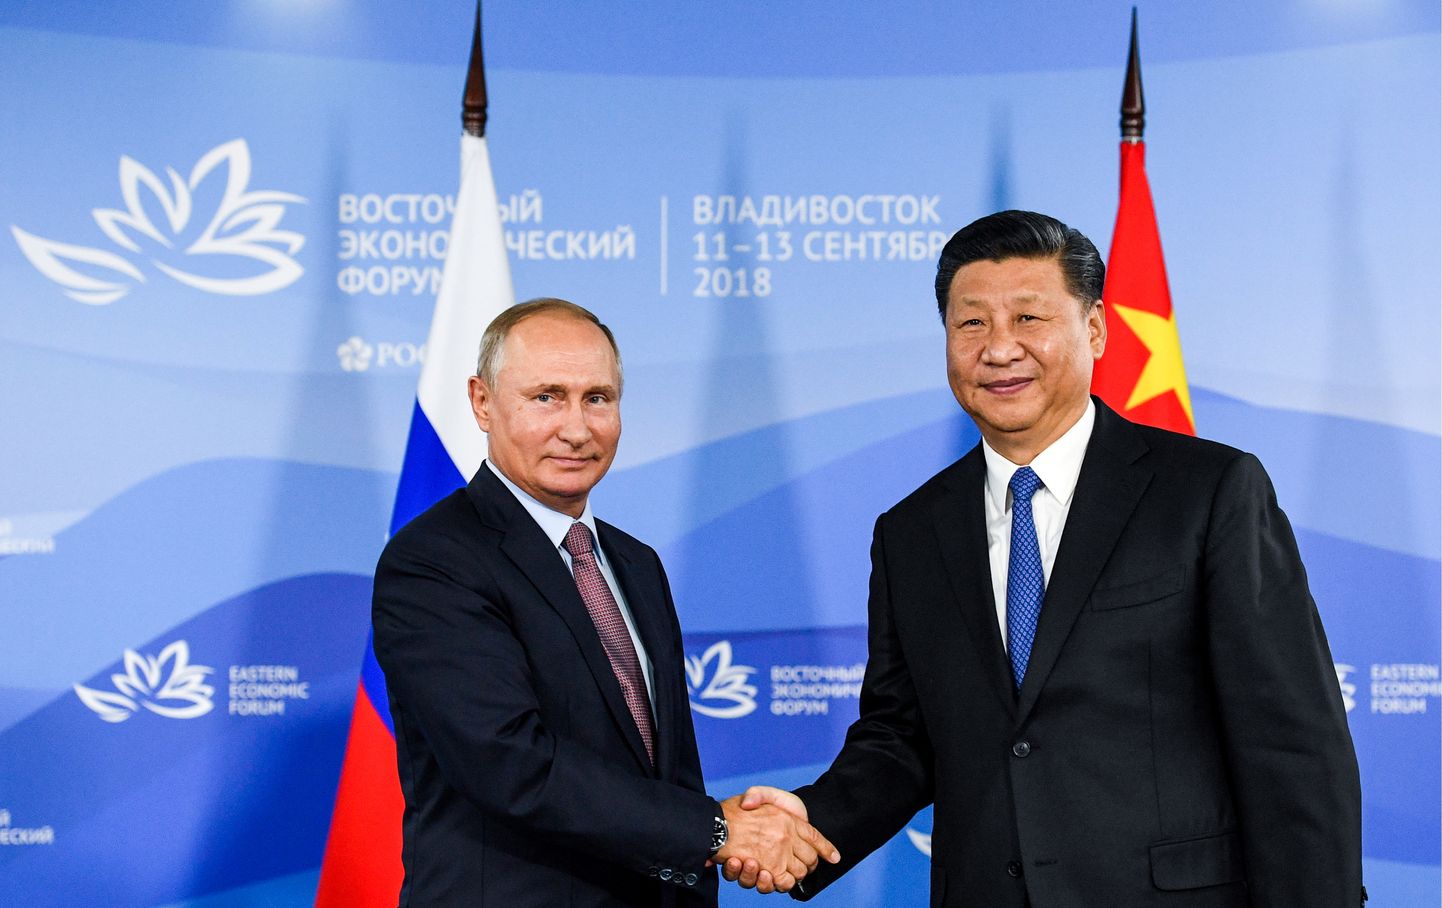 Krievijas prezidents Vladimirs Putins un Ķīnas prezidents Sji Dzjiņpins